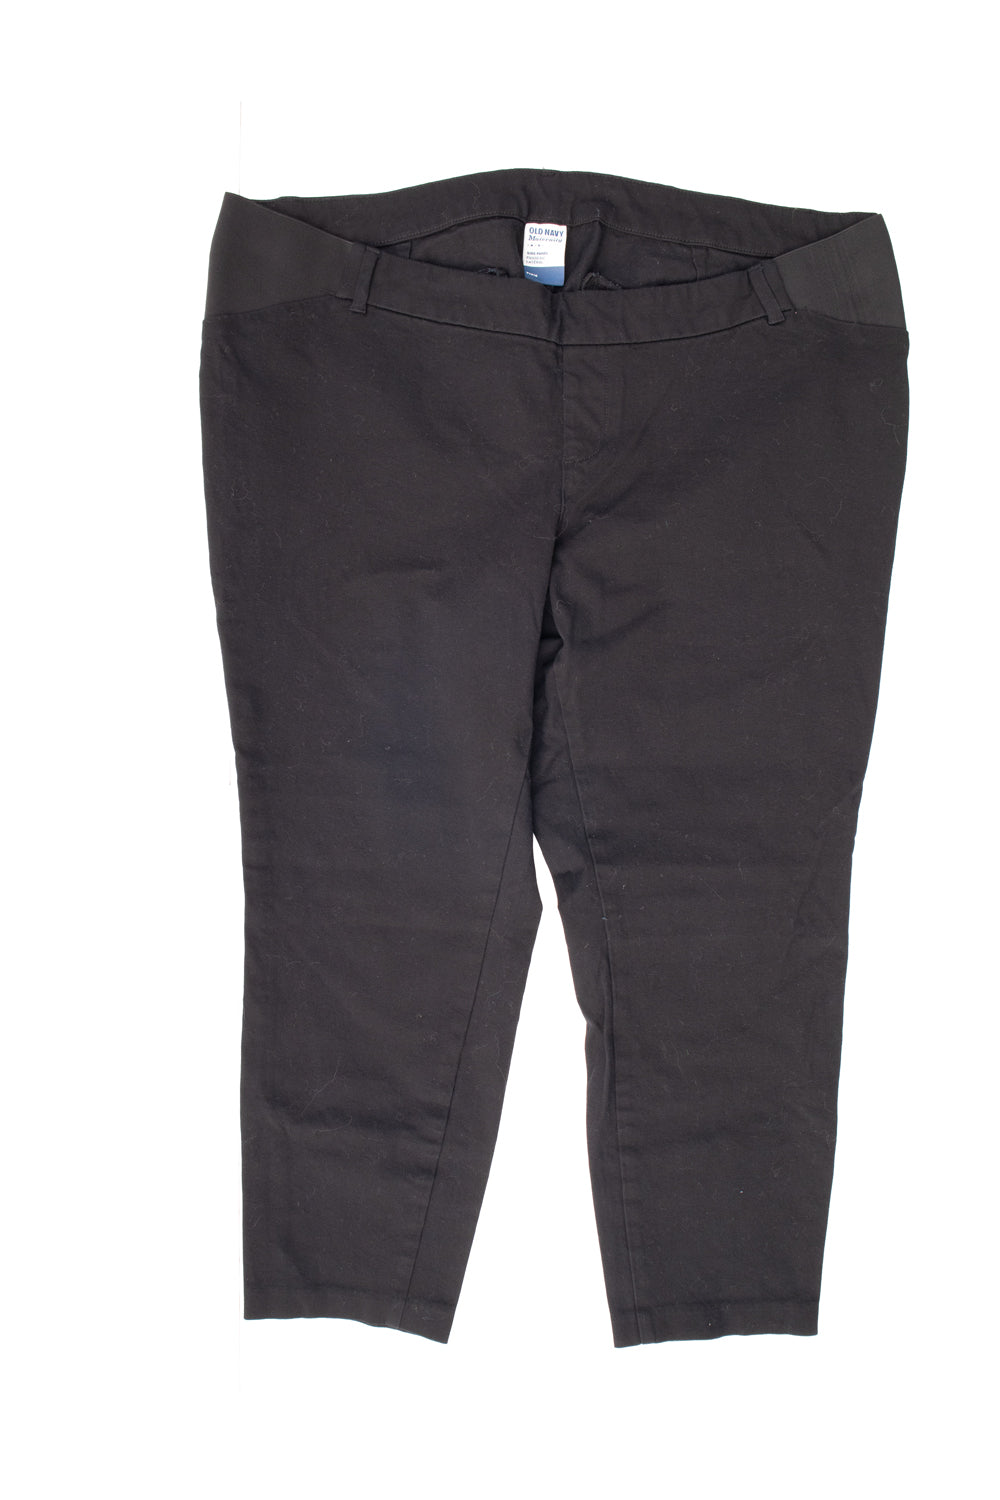 XL Pantalon de maternité Pixie Old Navy en noir Taille 18R